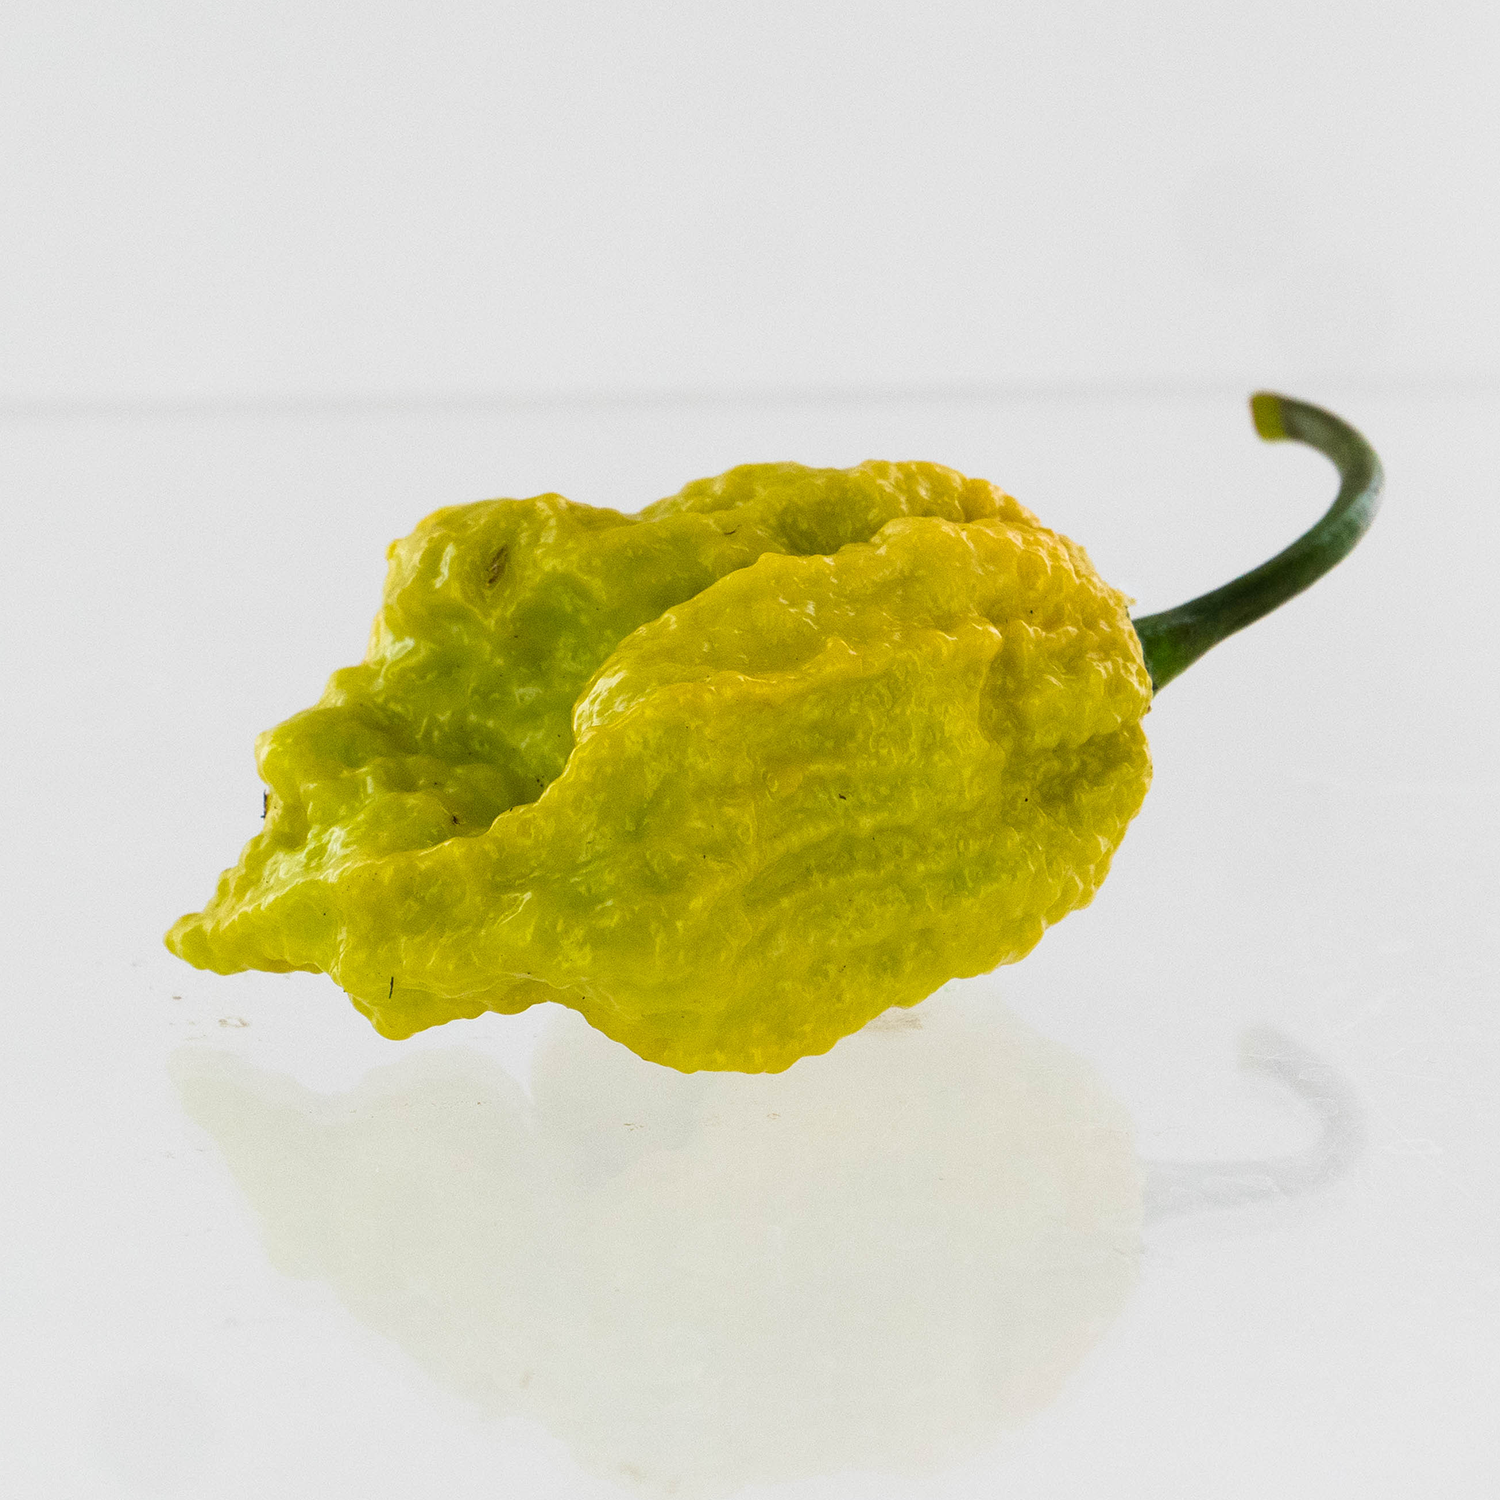 Pepper Joe's Golden Reaper pepper seeds - golden yellow reaper on white background